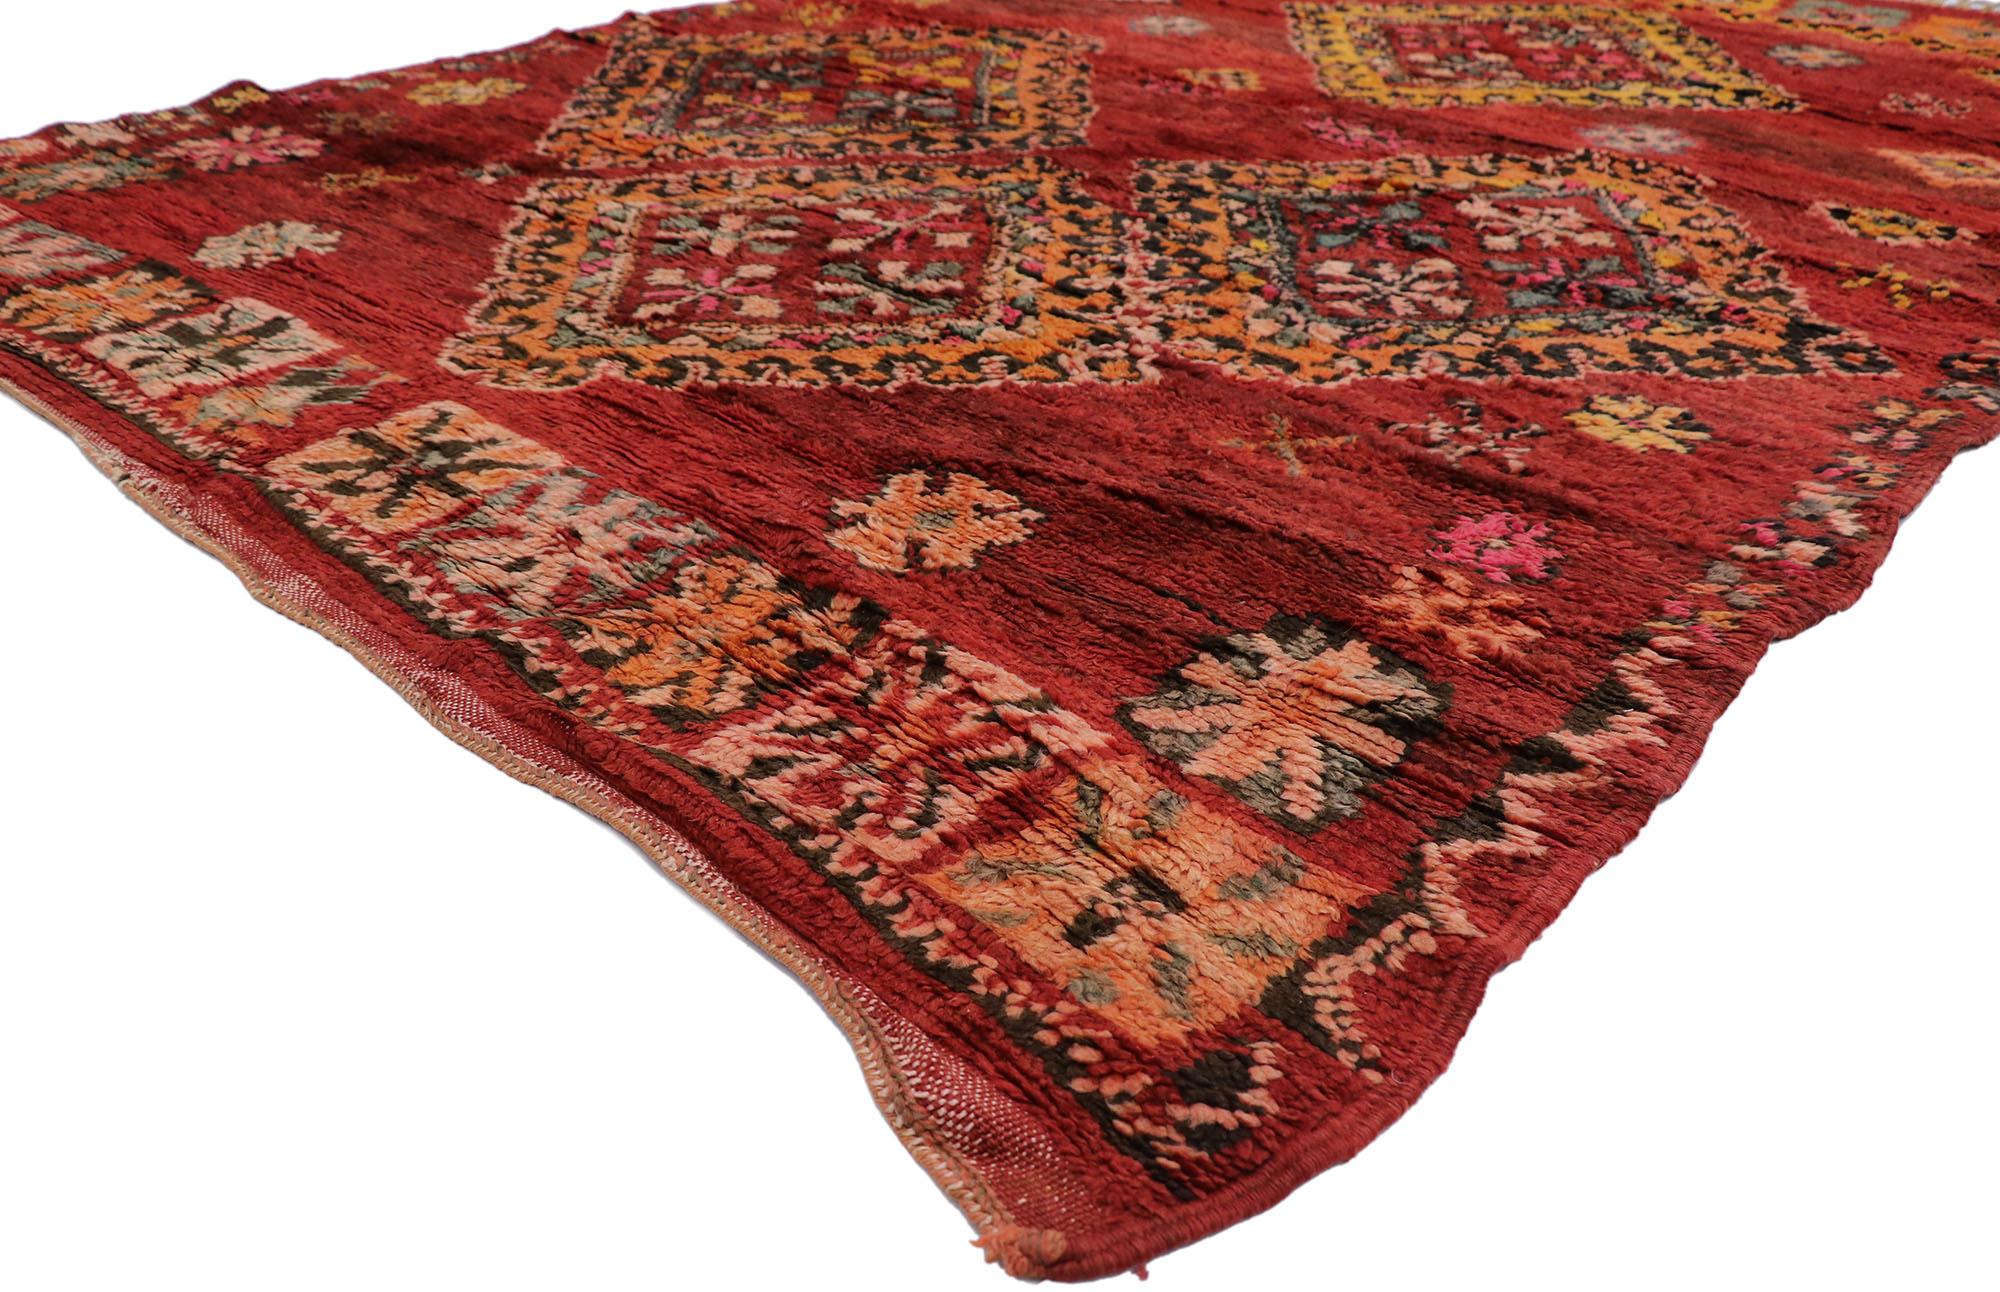 21529 Vintage Rot Boujad Marokkanischer Teppich, 06'03 x 09'06.
Boho-Jungalow trifft auf nomadischen Charme in diesem handgeknüpften roten marokkanischen Wollteppich im Vintage-Stil. Die essentielle Symbolik und die kräftigen Erdtöne, die in dieses